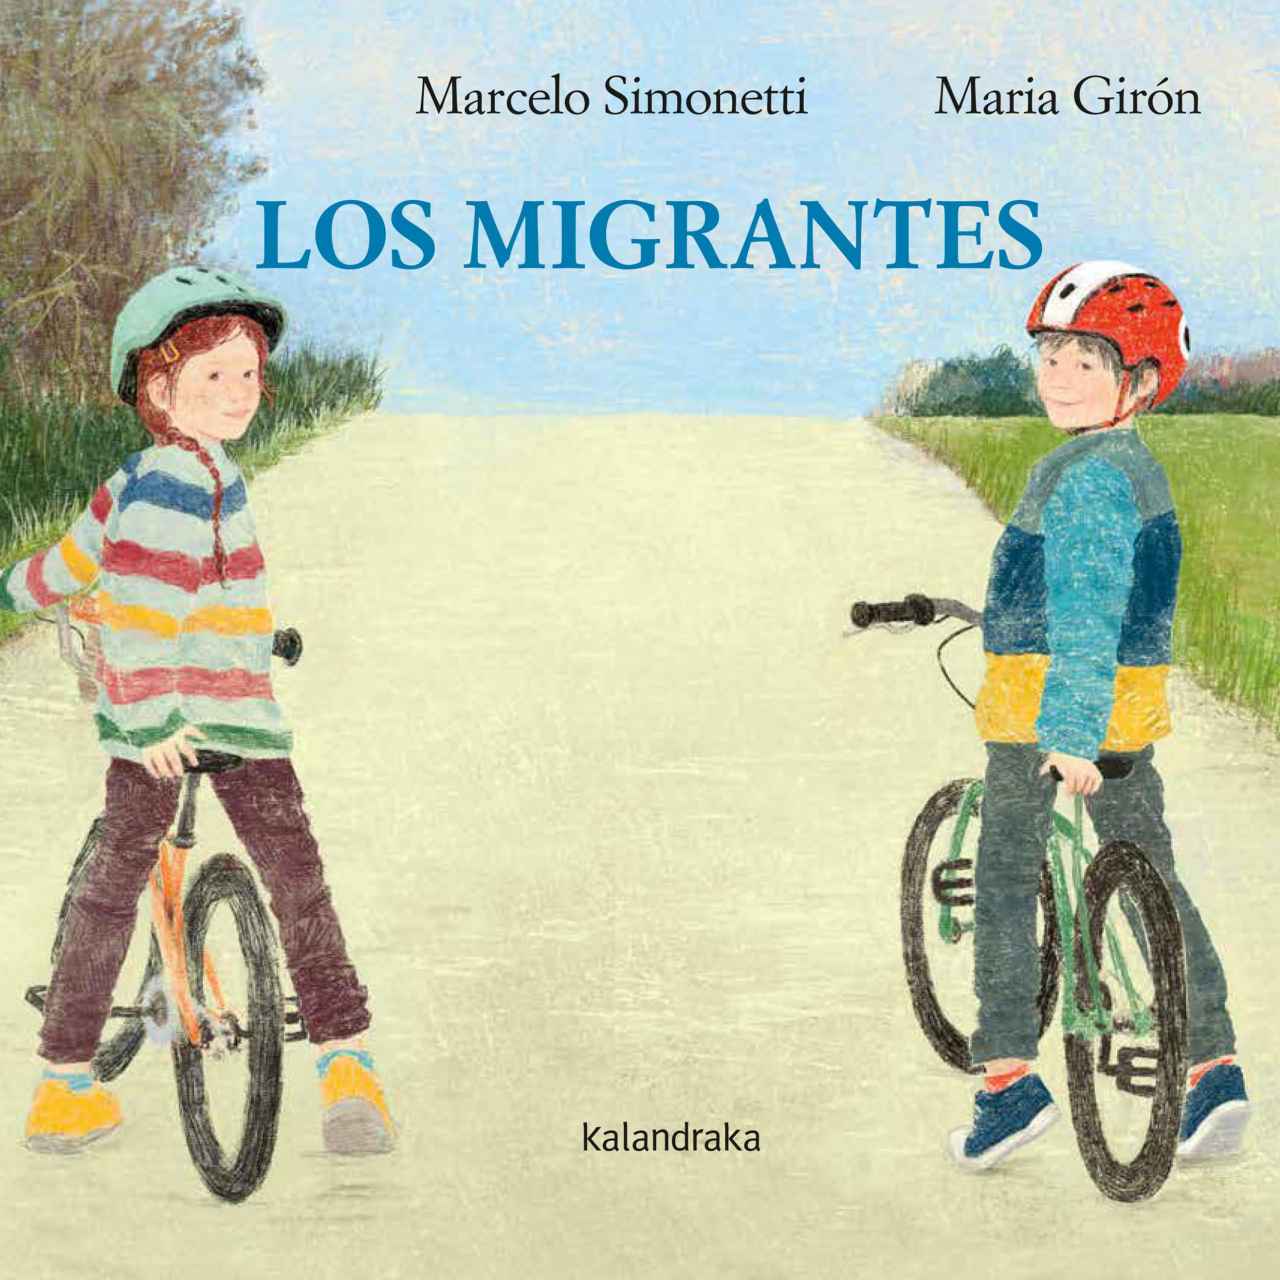 Los migrantes de Marcelo Simonetti y Maria Girón